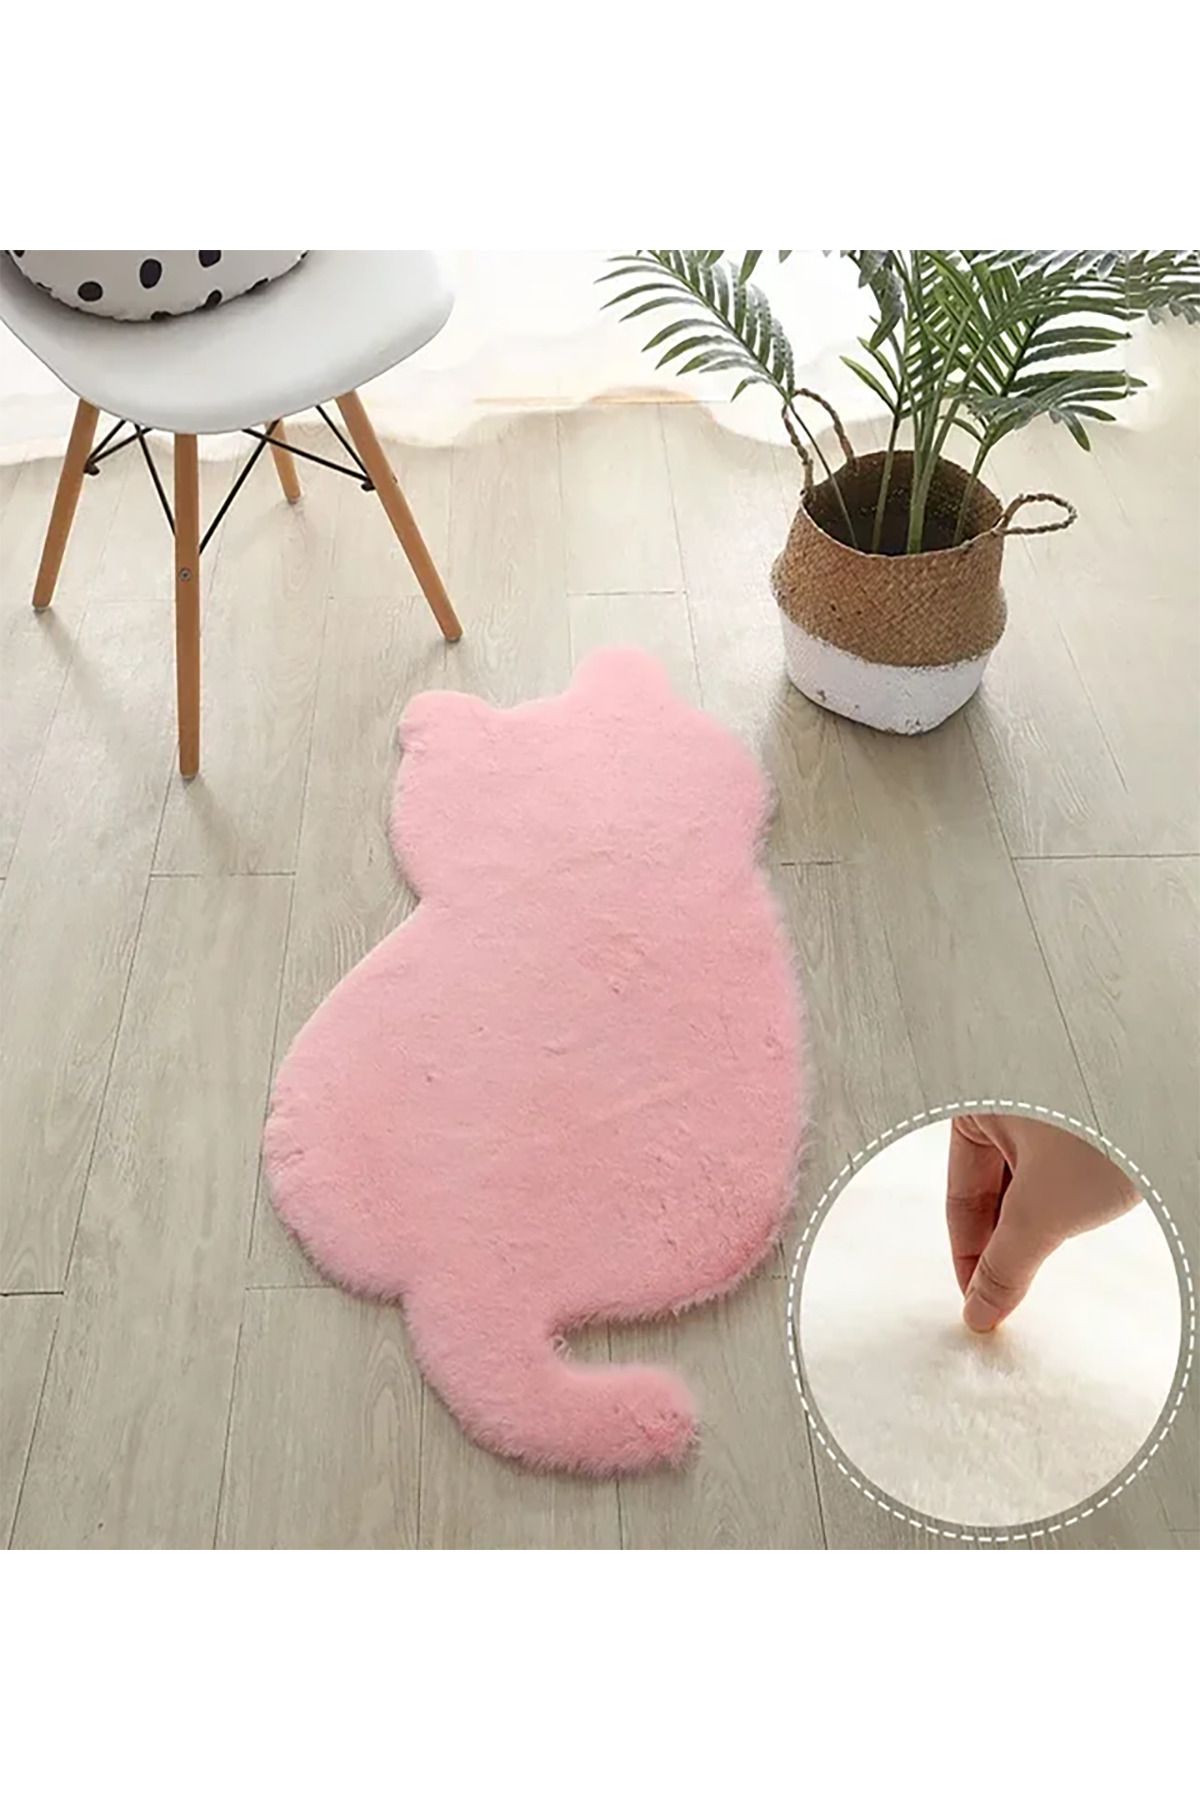 ALgorand Home Sevimli kedi şekilli halı kabarık peluş süper yumuşak kız odası salon kanepe kaymaz halı